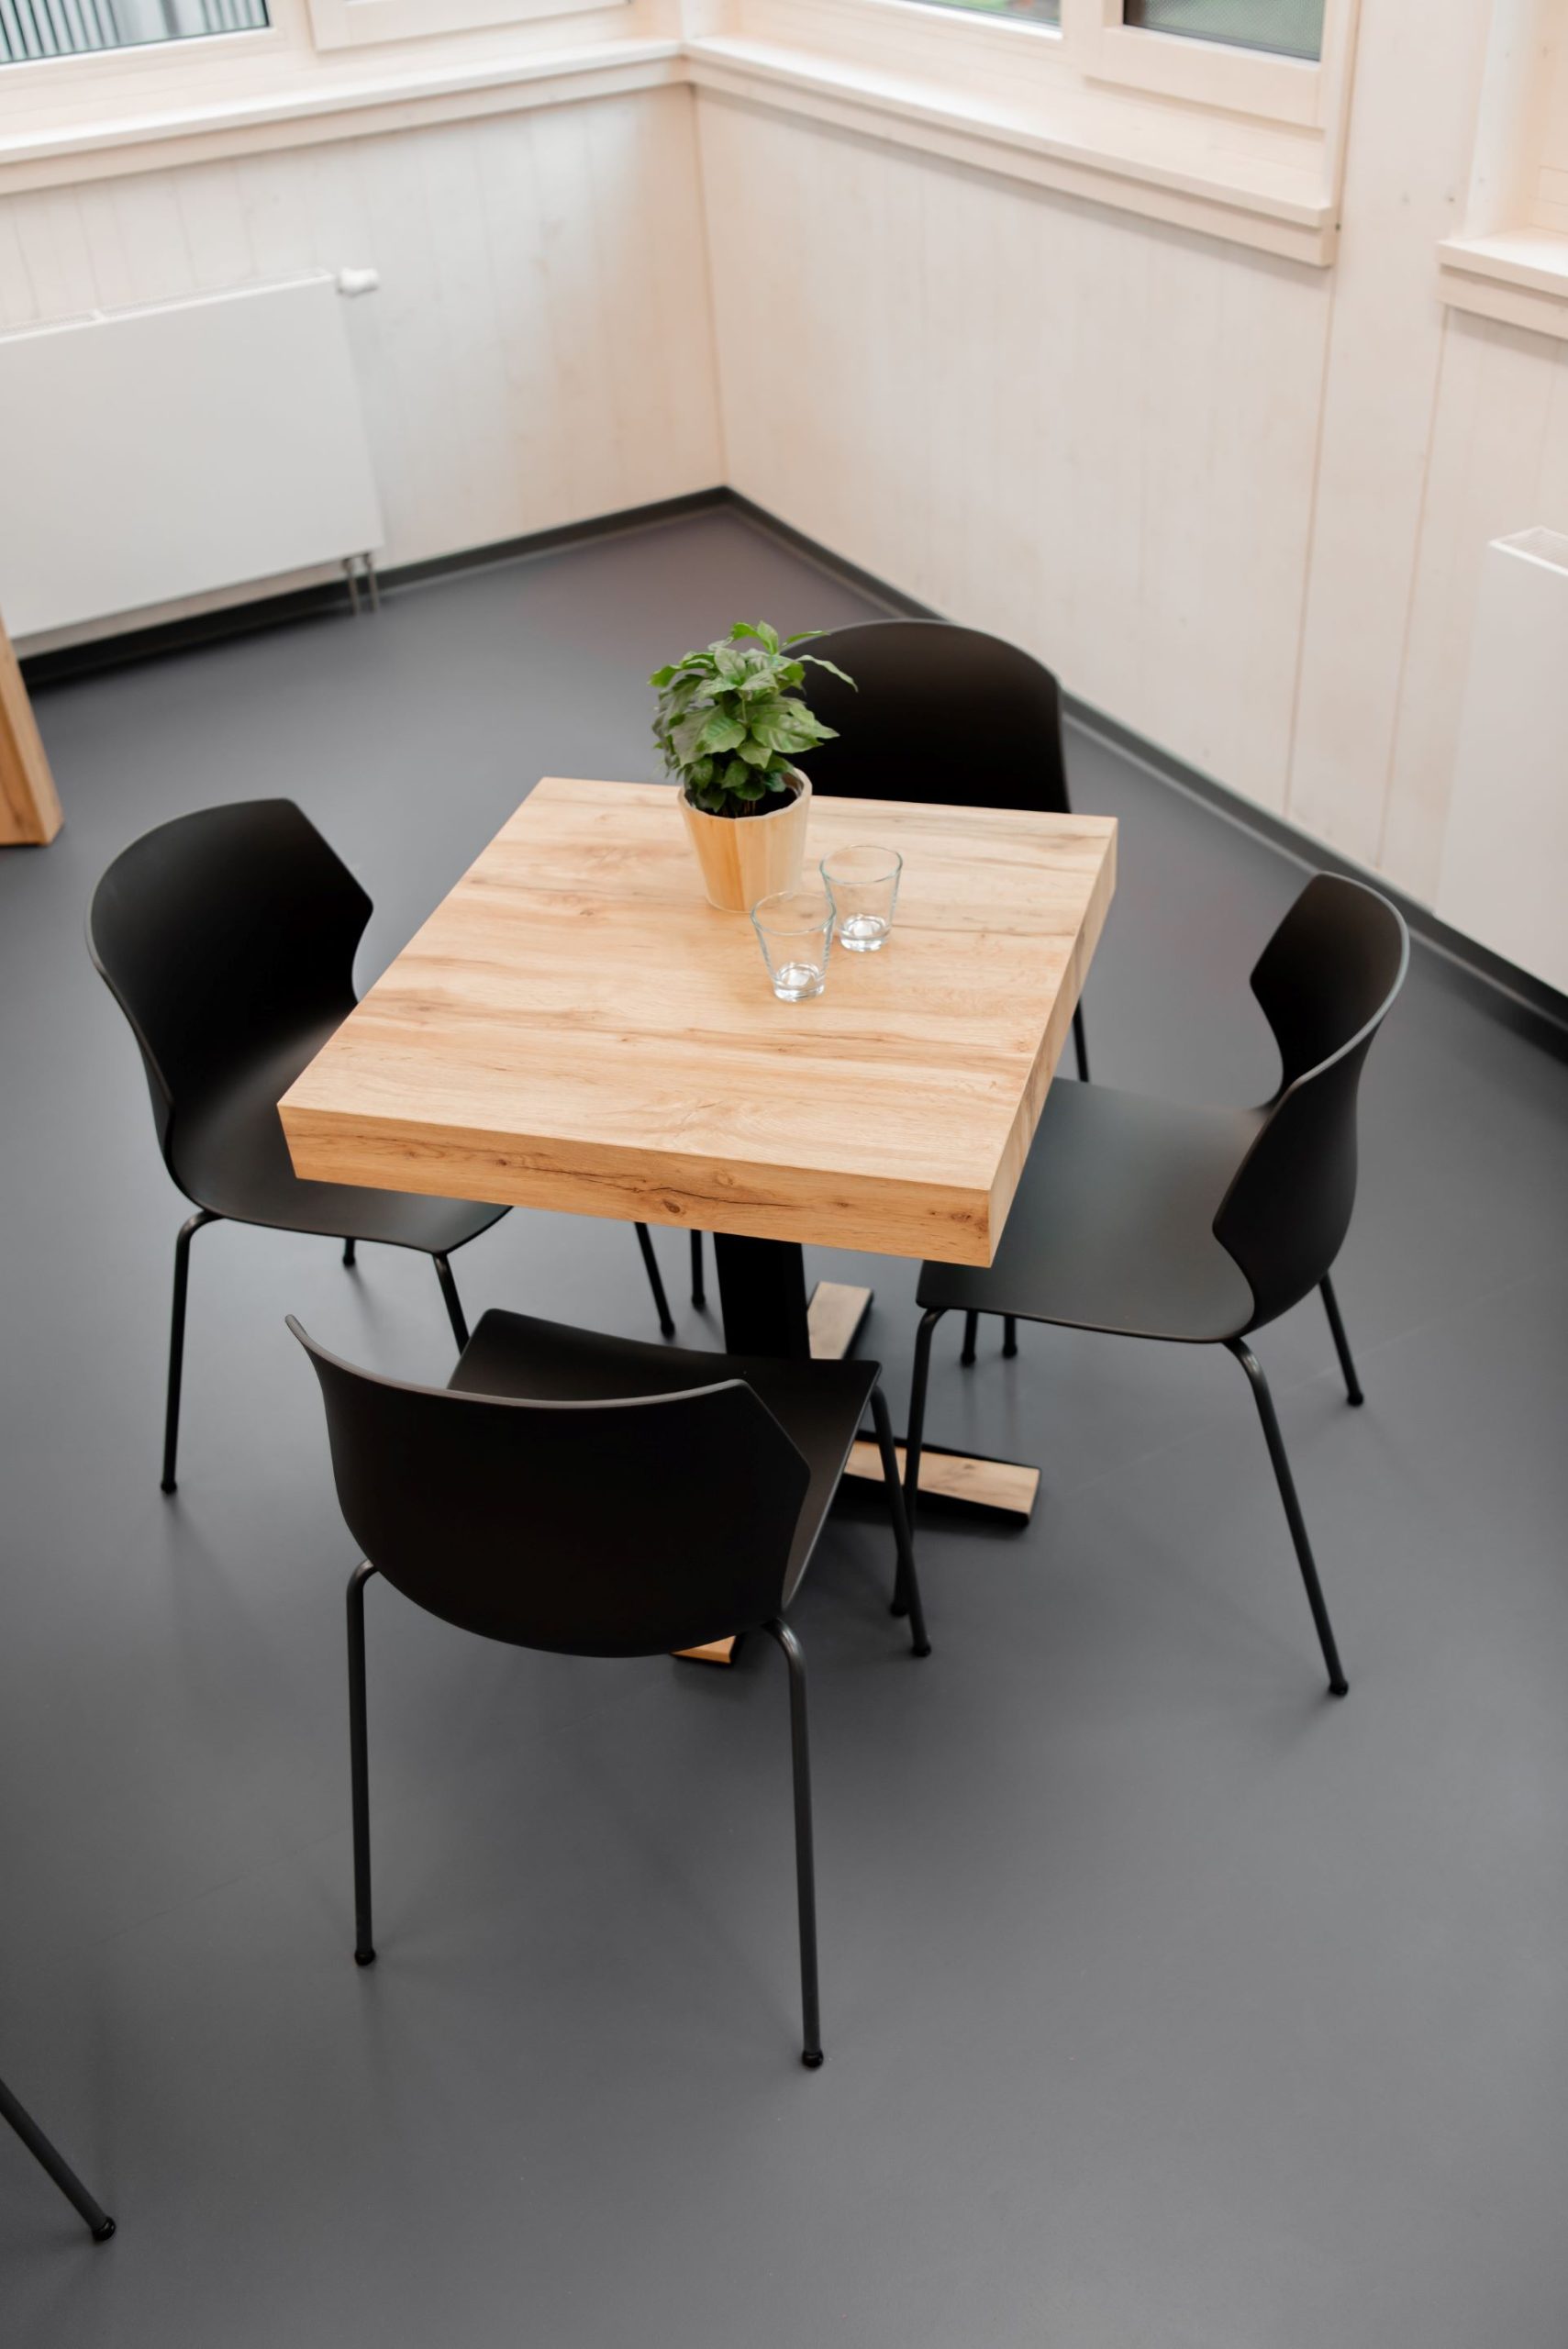 Een vierkante houten tafel met vier zwarte stoelen